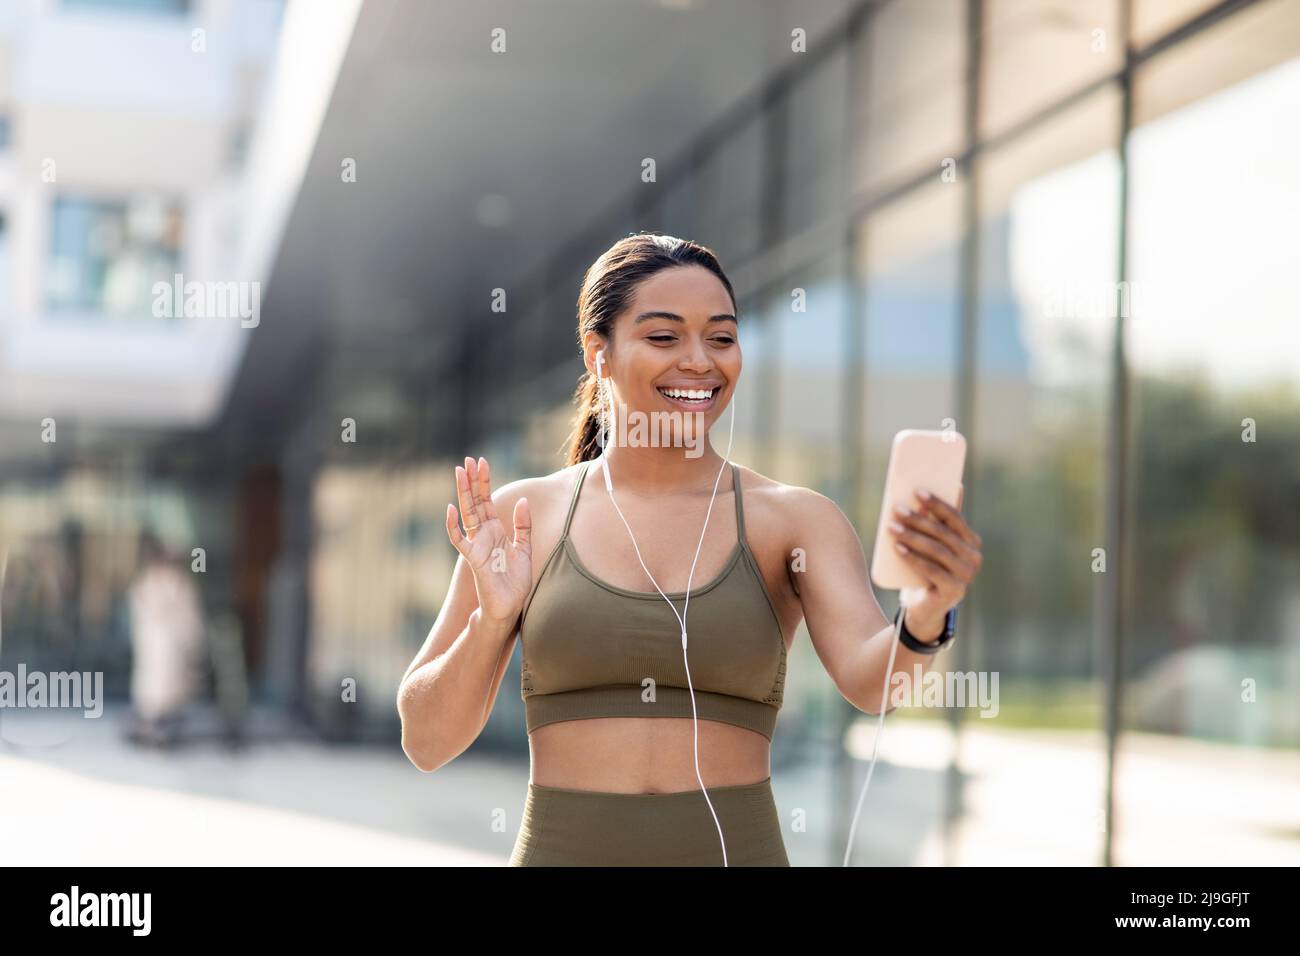 Die sportliche junge schwarze Dame winkt auf dem Smartphone-Bildschirm und führt einen Online-Videoanruf mit dem Fitnesstrainer auf der Straße der Stadt Stockfoto